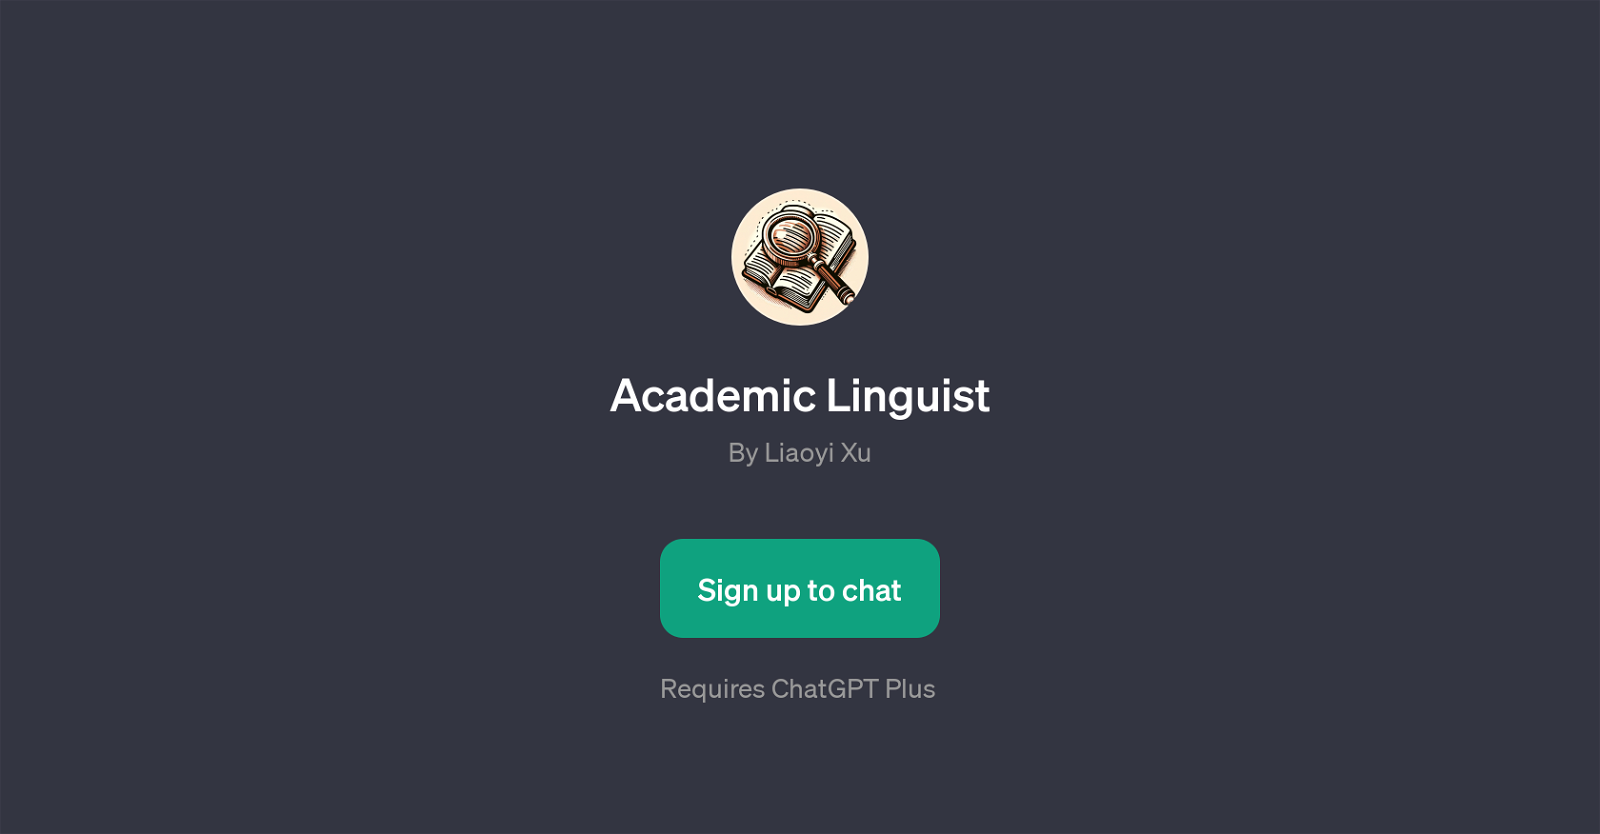 Academic Linguist website